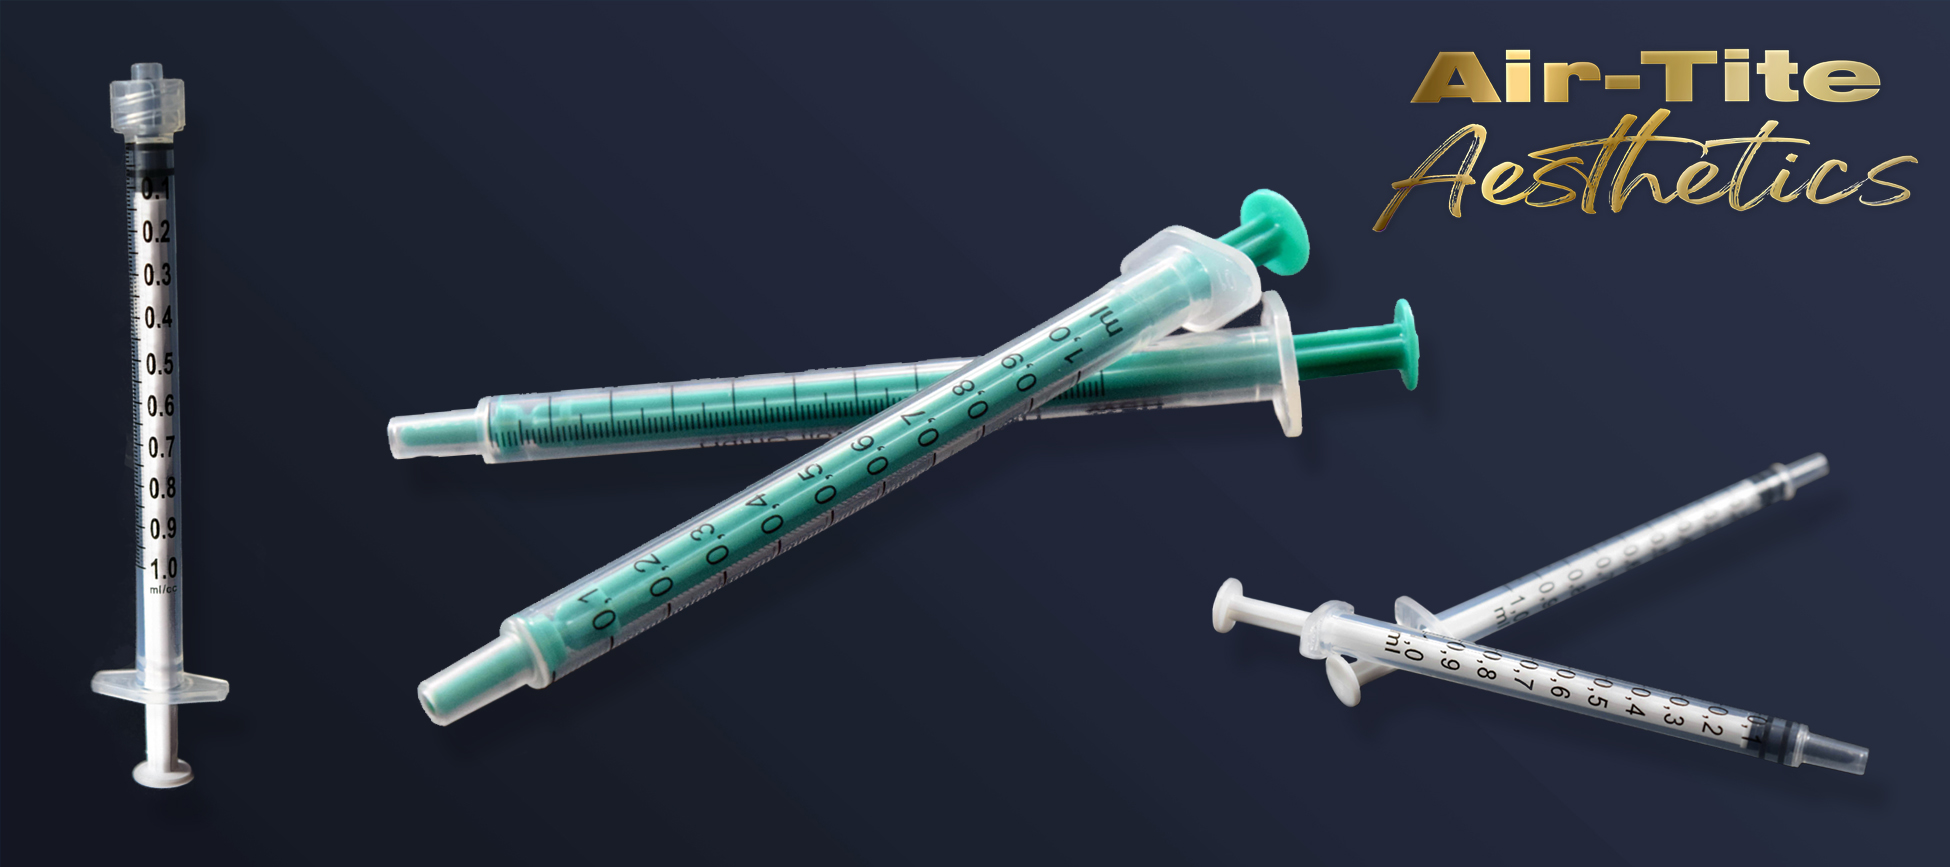 Aesthetic Syringes